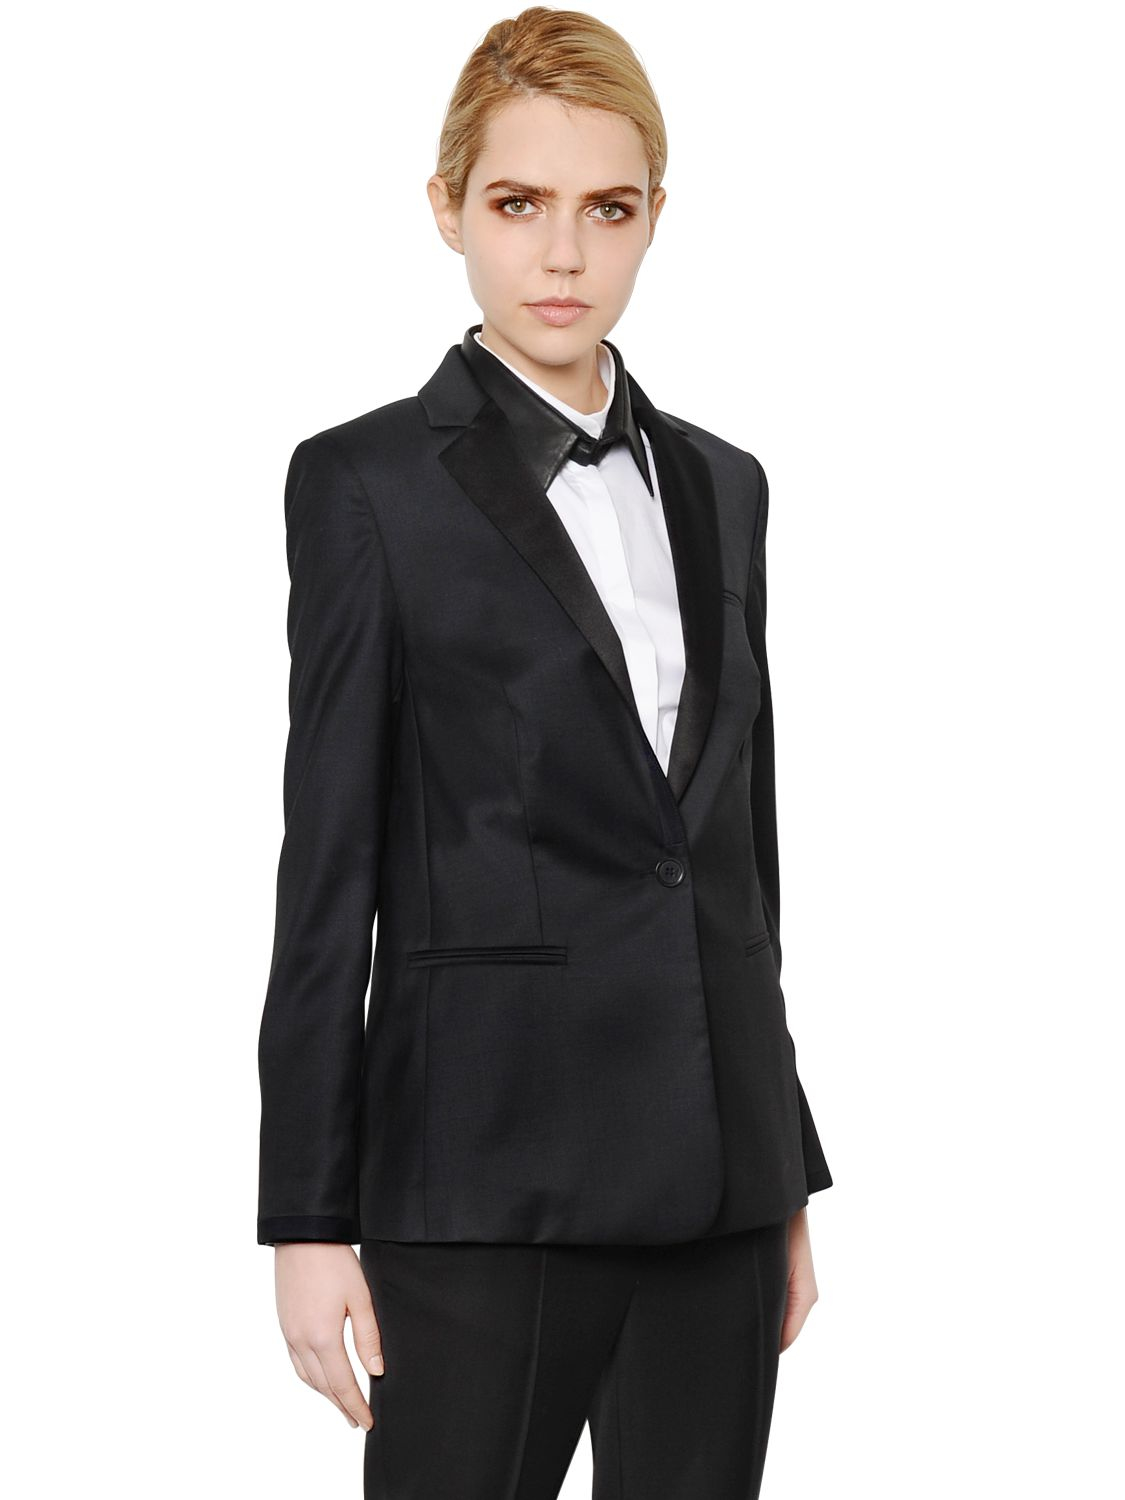 Lyst - Karl Lagerfeld Wool Gabardine Tuxedo Jacket in Black for Men